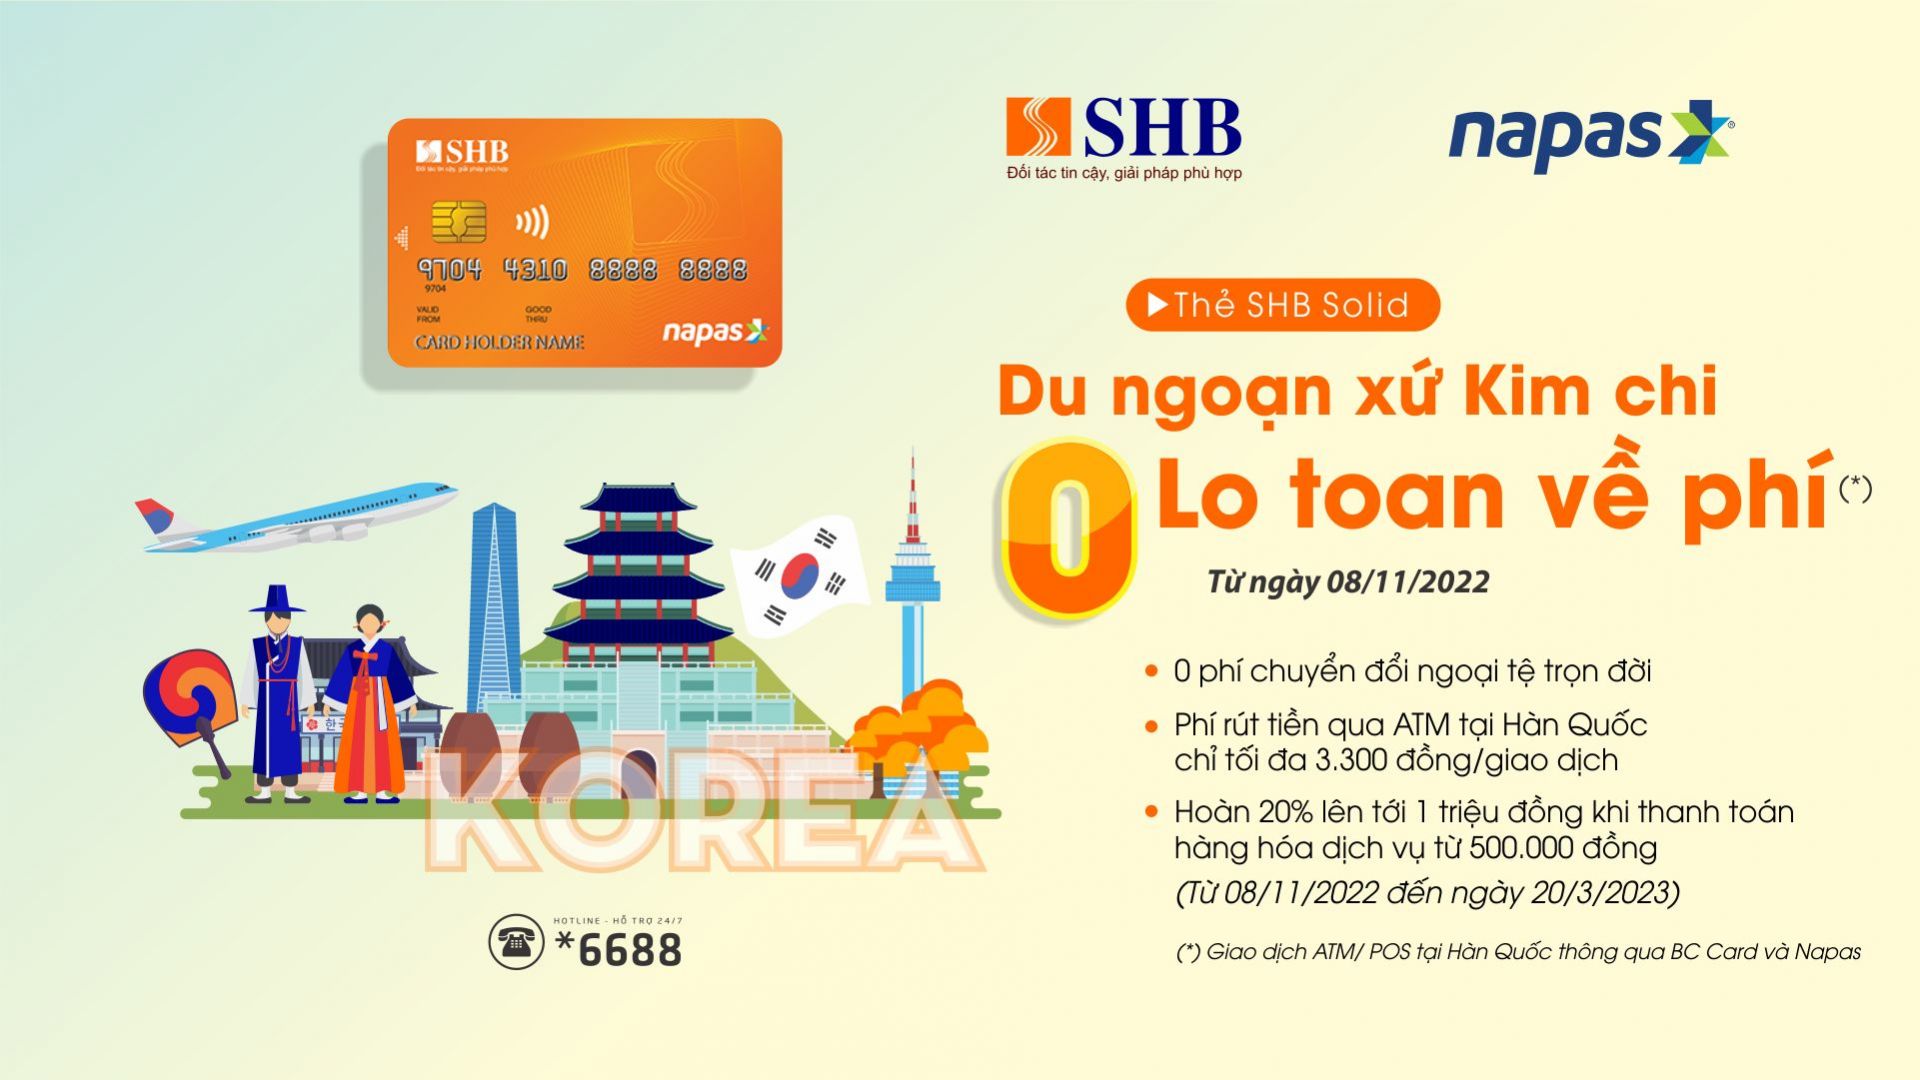 Khách hàng nhận nhiều ưu đãi khi sử dụng thẻ ghi nợ nội địa SHB tại Hàn Quốc